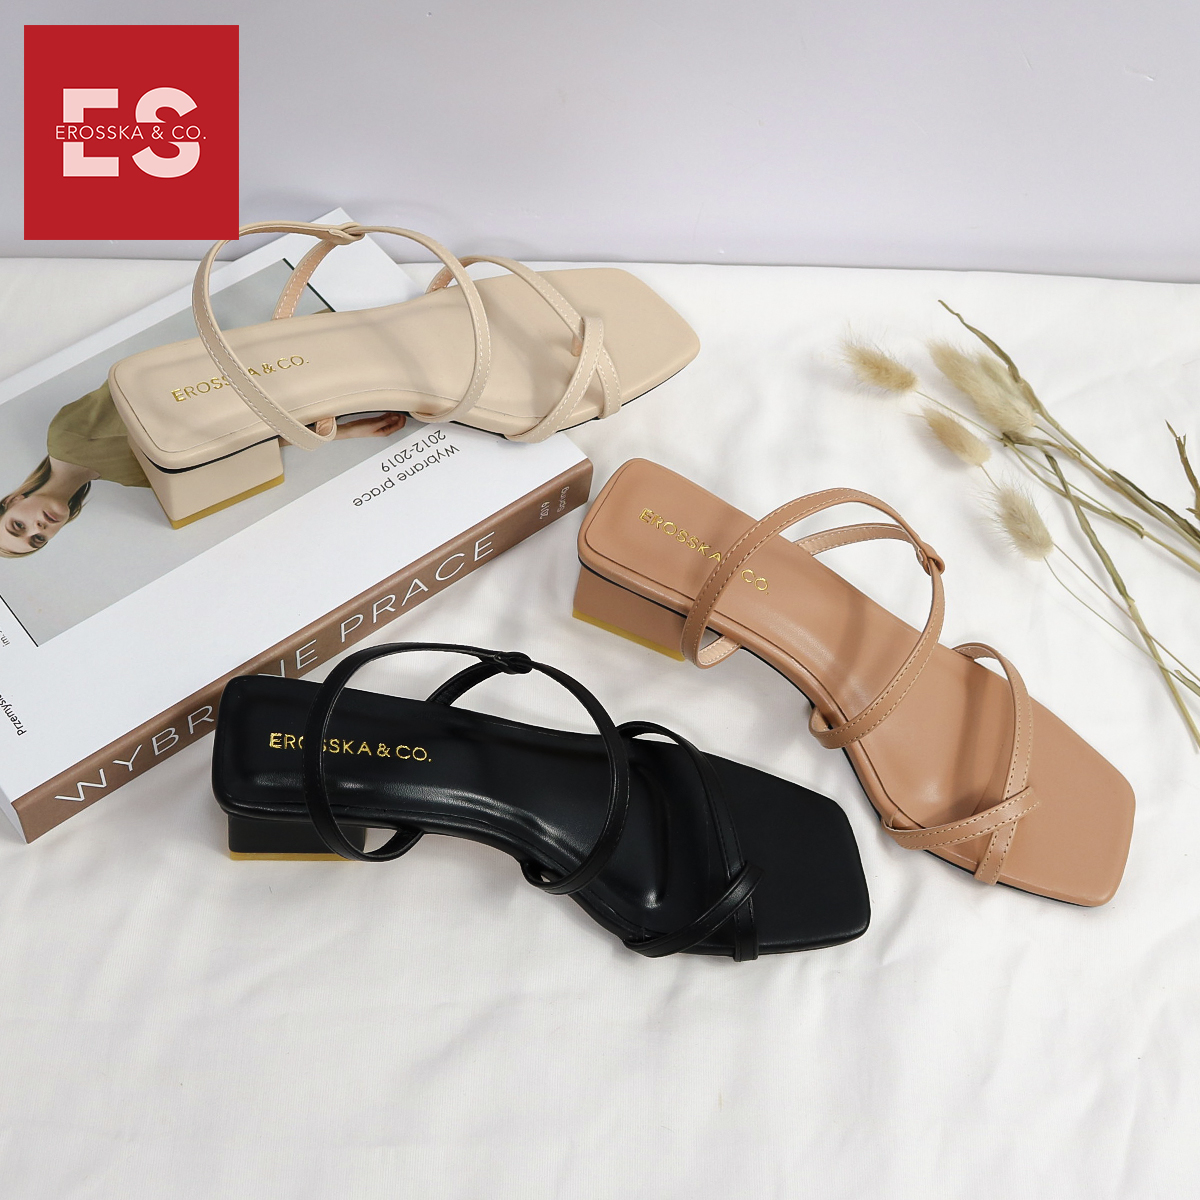 Giày sandal nữ thời trang Erosska xỏ ngón dây mãnh kiểu dáng hiện đại dễ phối đồ cao 5cm EB024